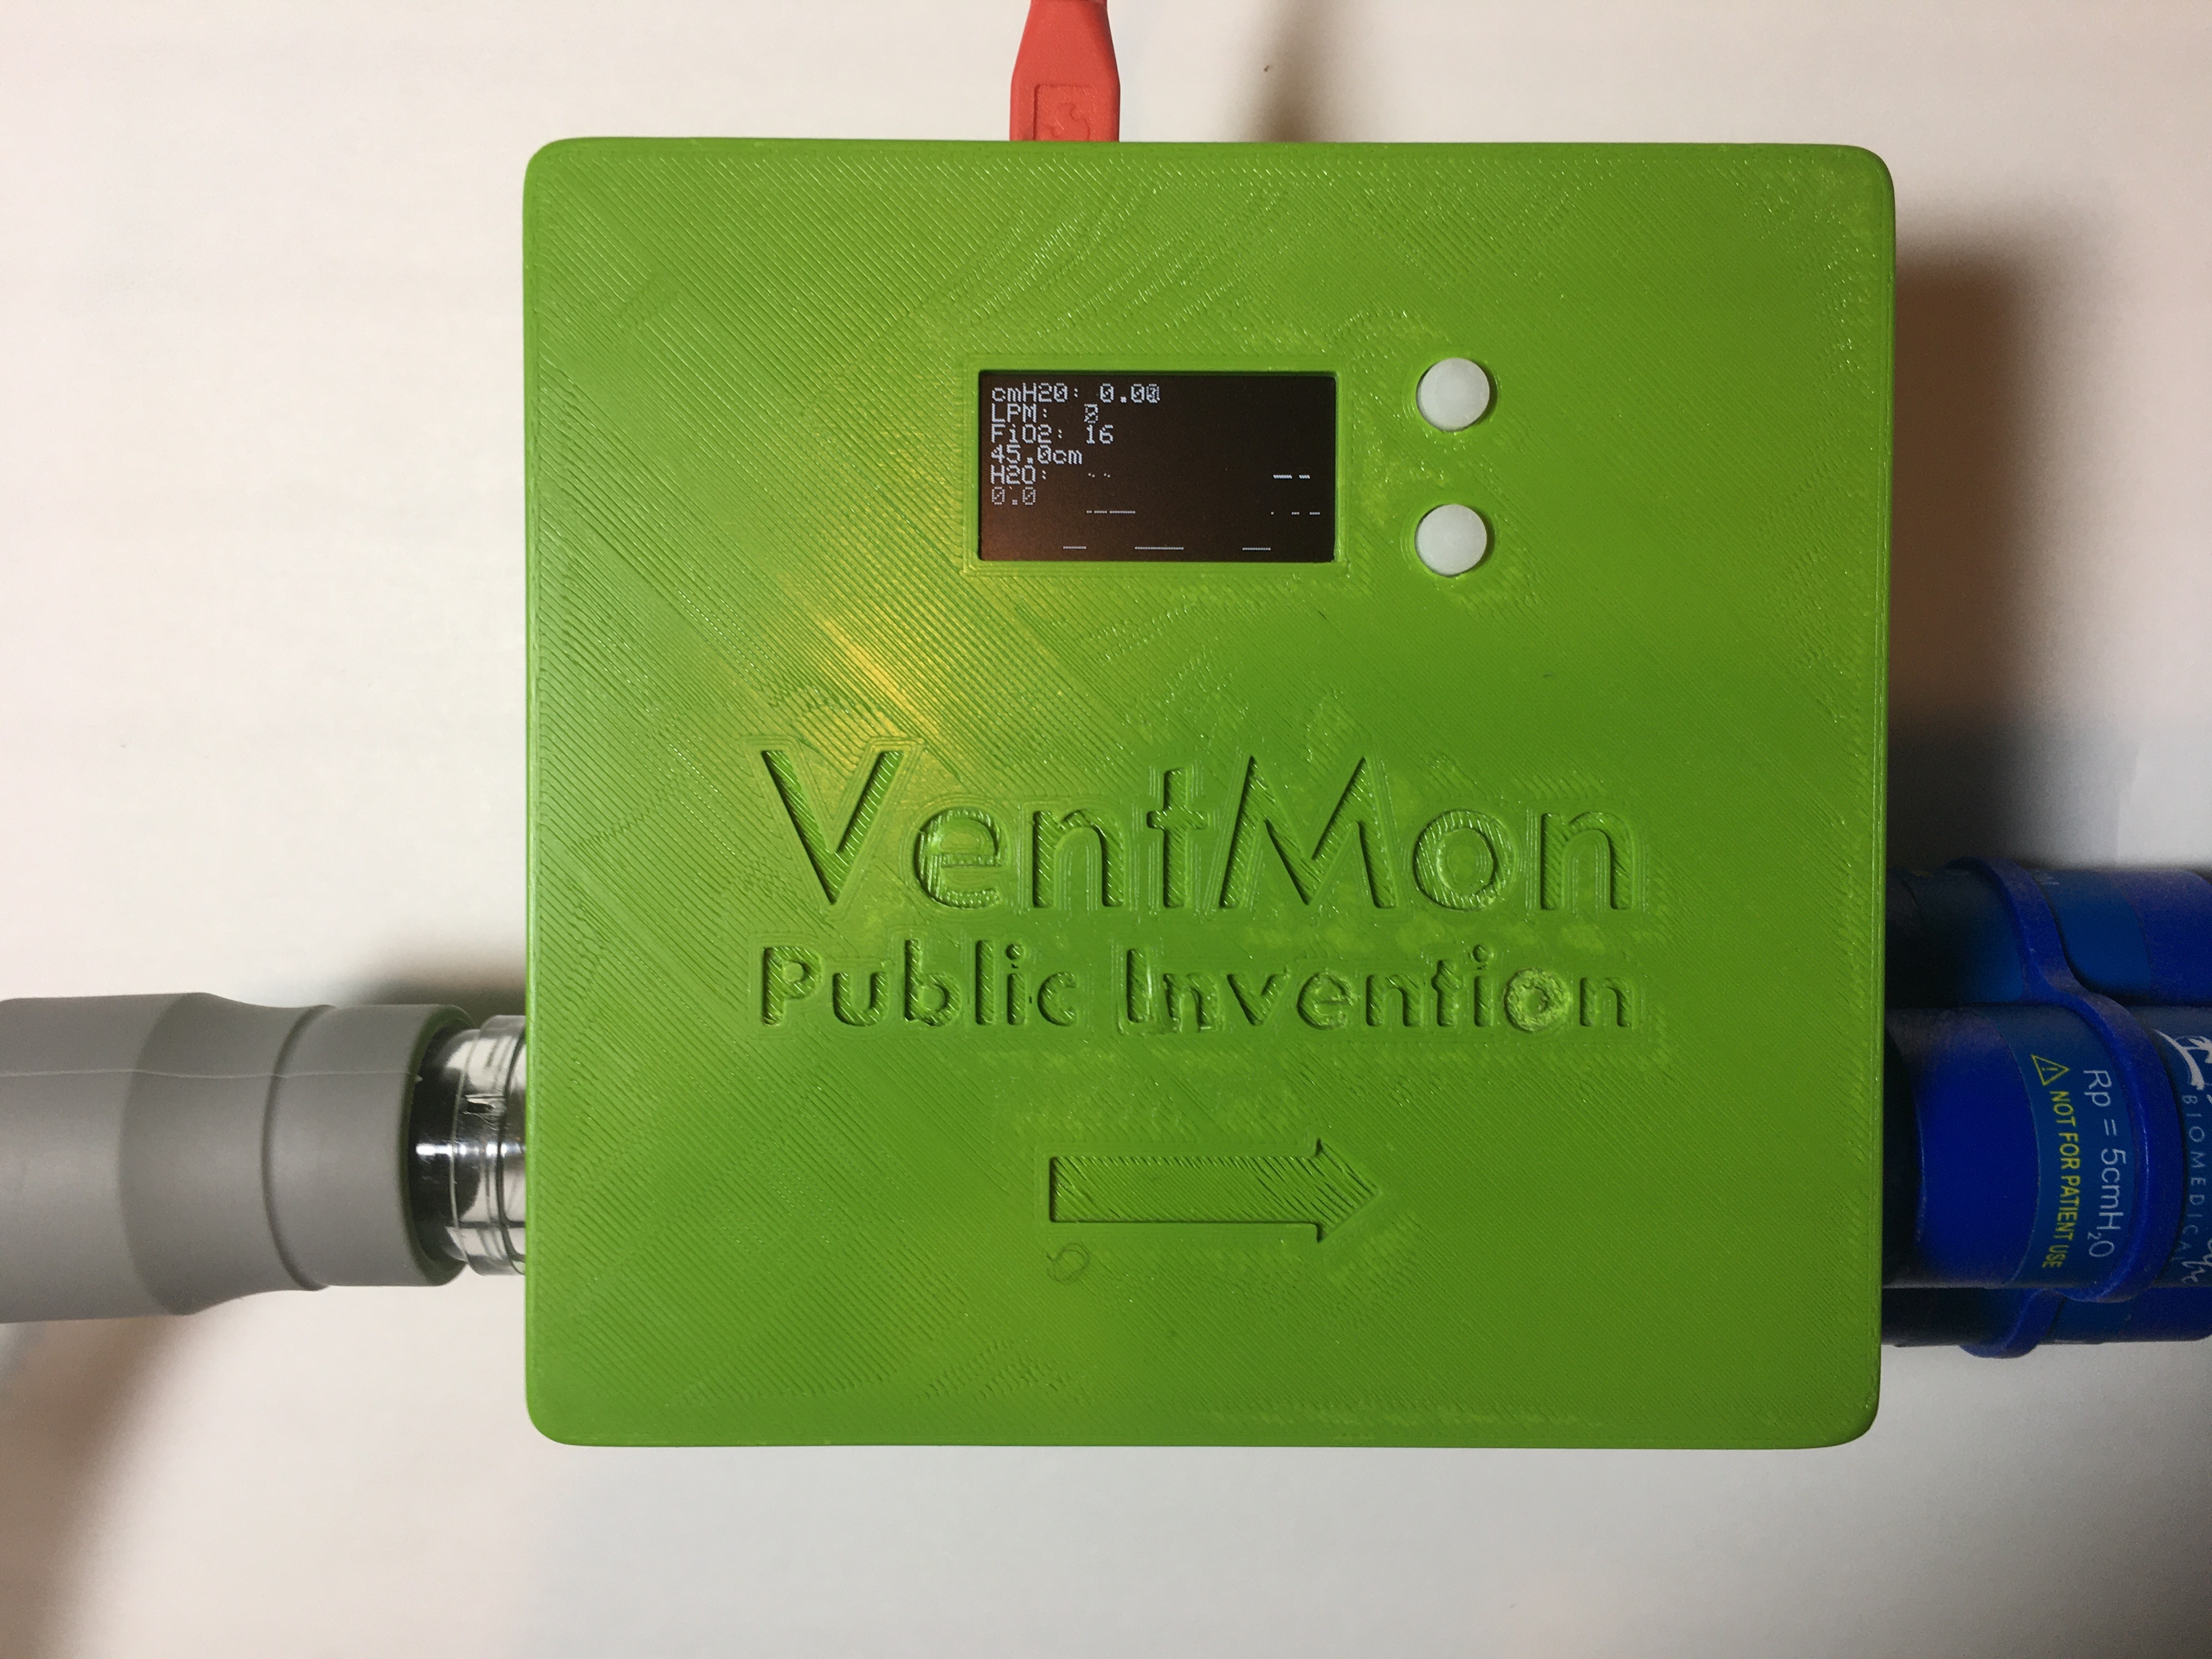 photo of the VentMon equipment